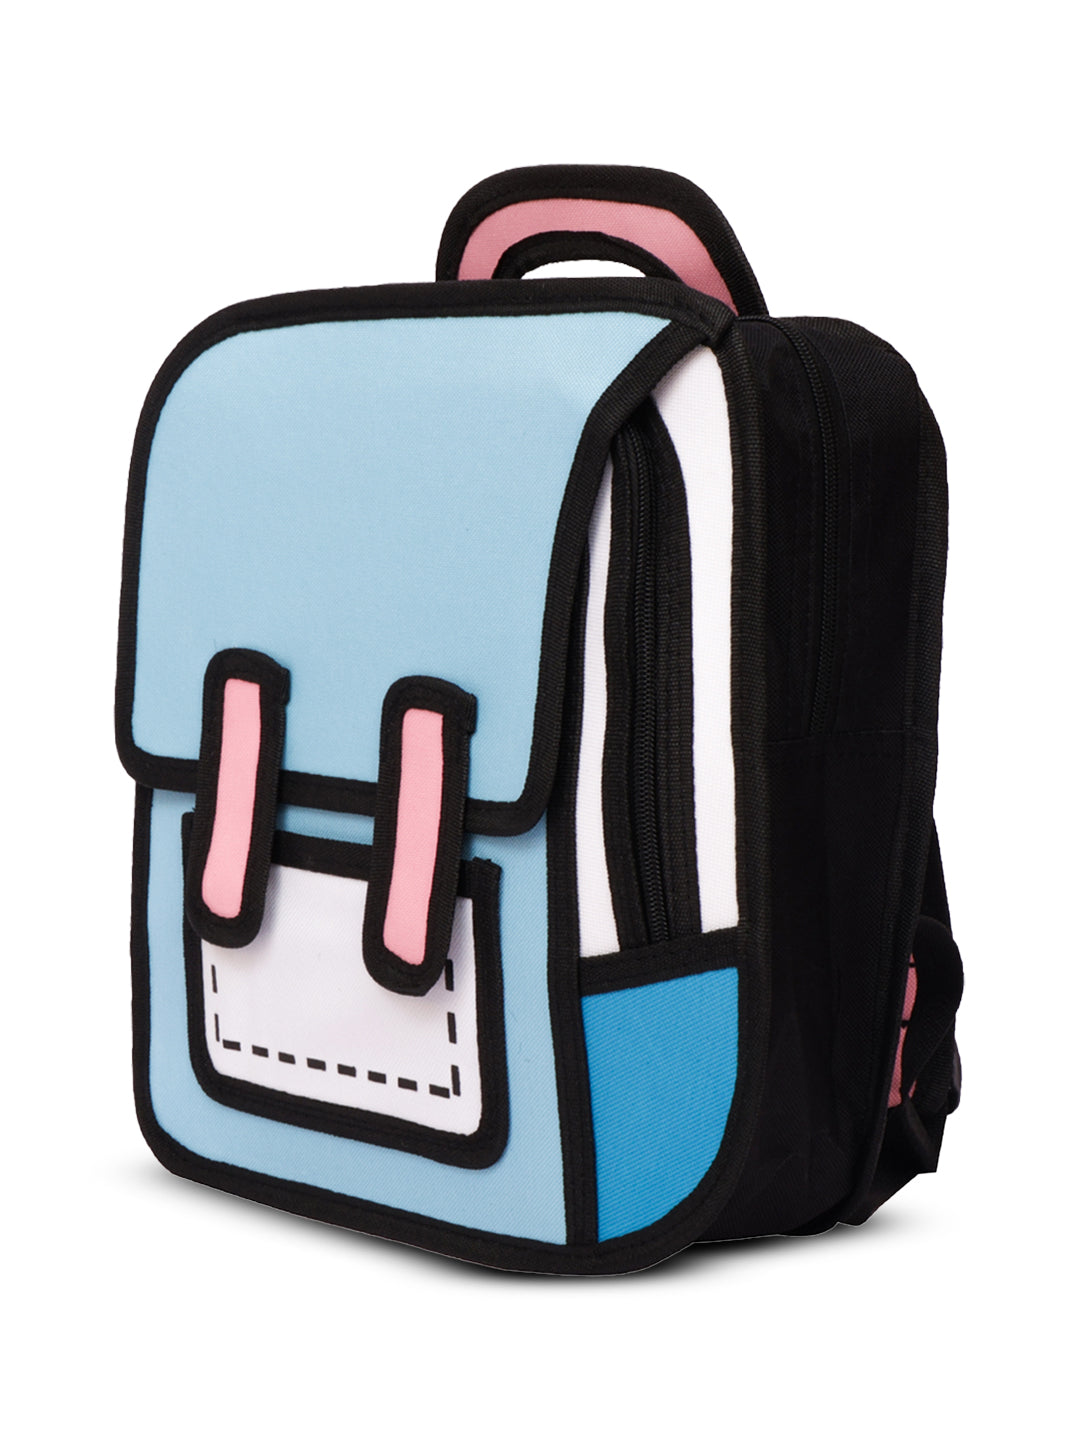 2D anime cartoon laptop bag#color_turquoise-blue